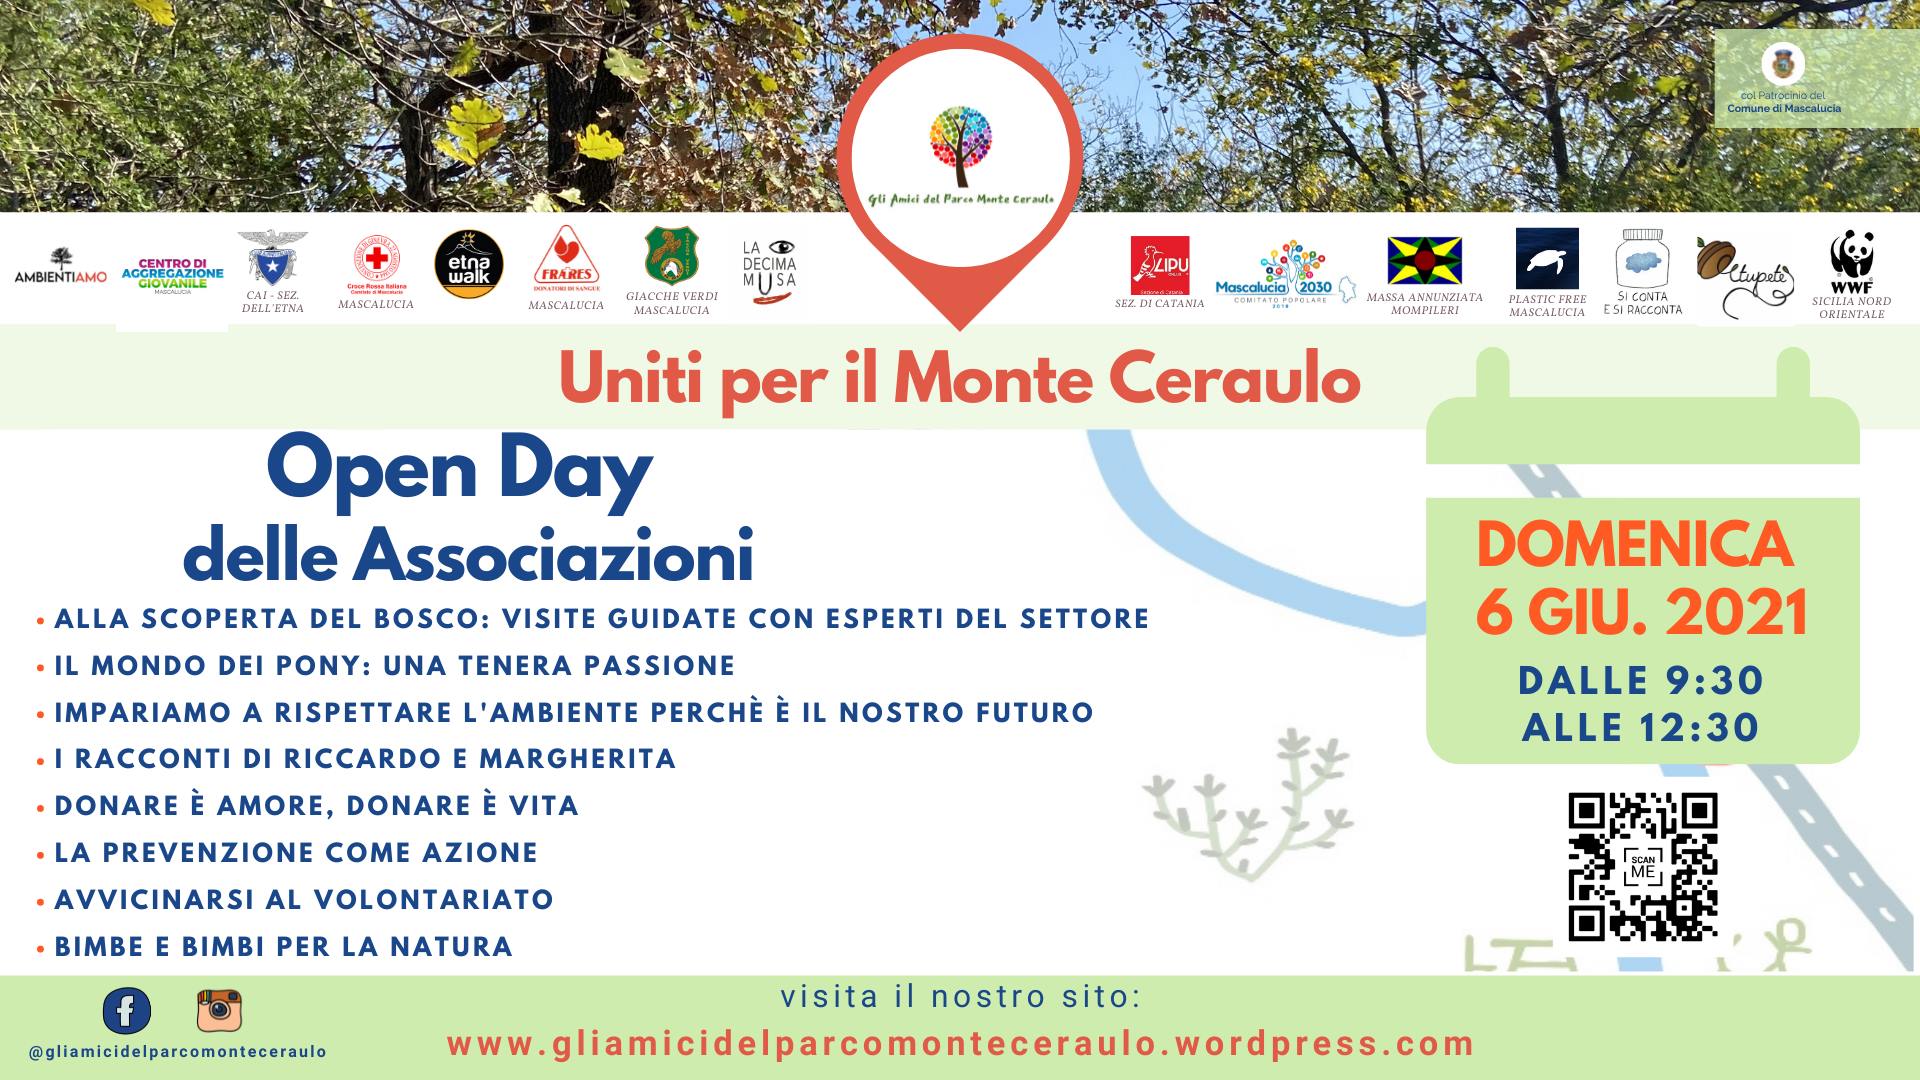 Mascalucia: united for Monte Ceraulo 